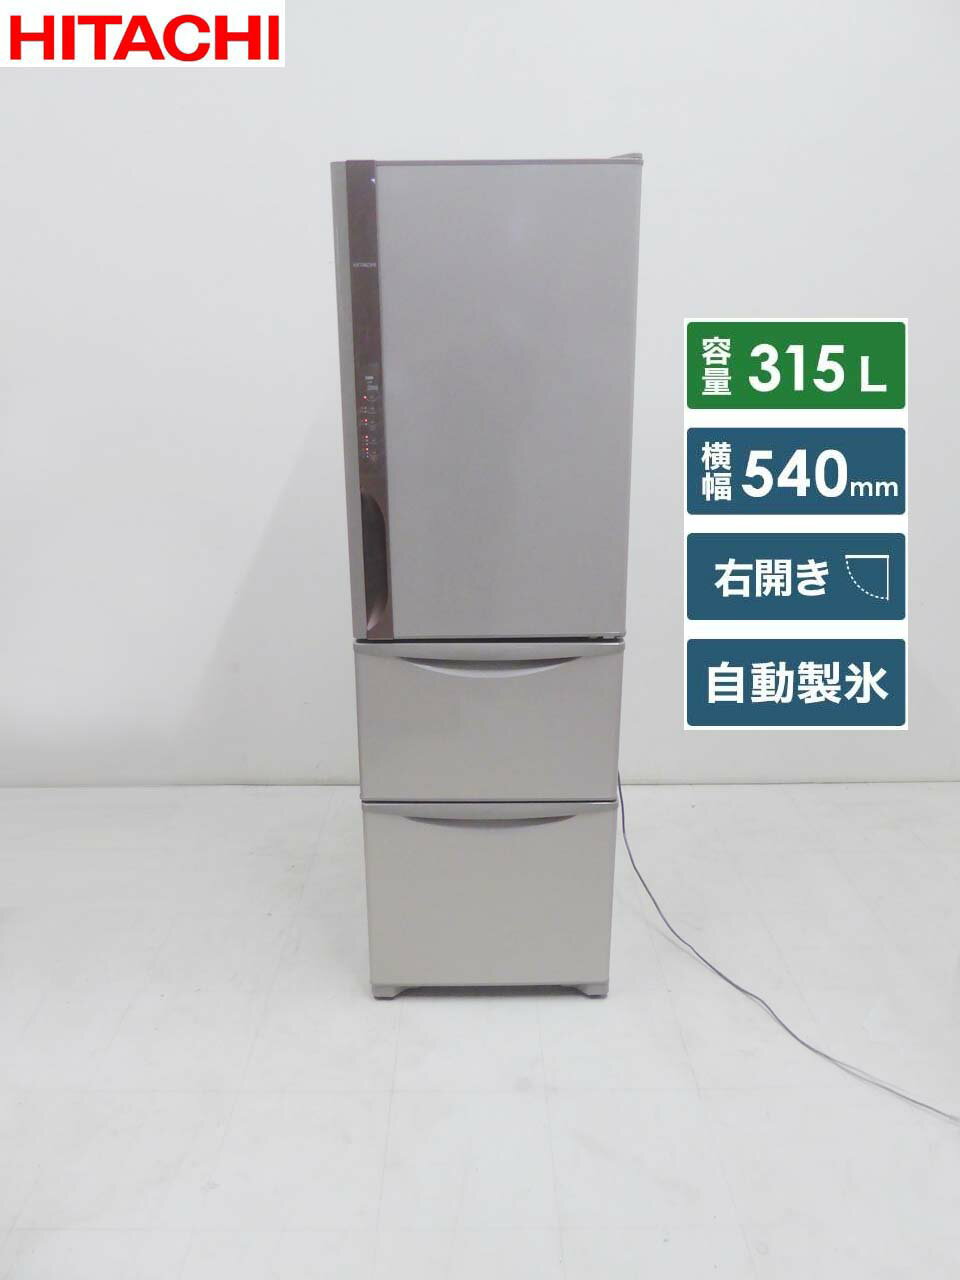 ■HITACHI 日立■2019年製 動作保証付 うるおいチルド 3ドア冷蔵庫 R-K32JV 315L